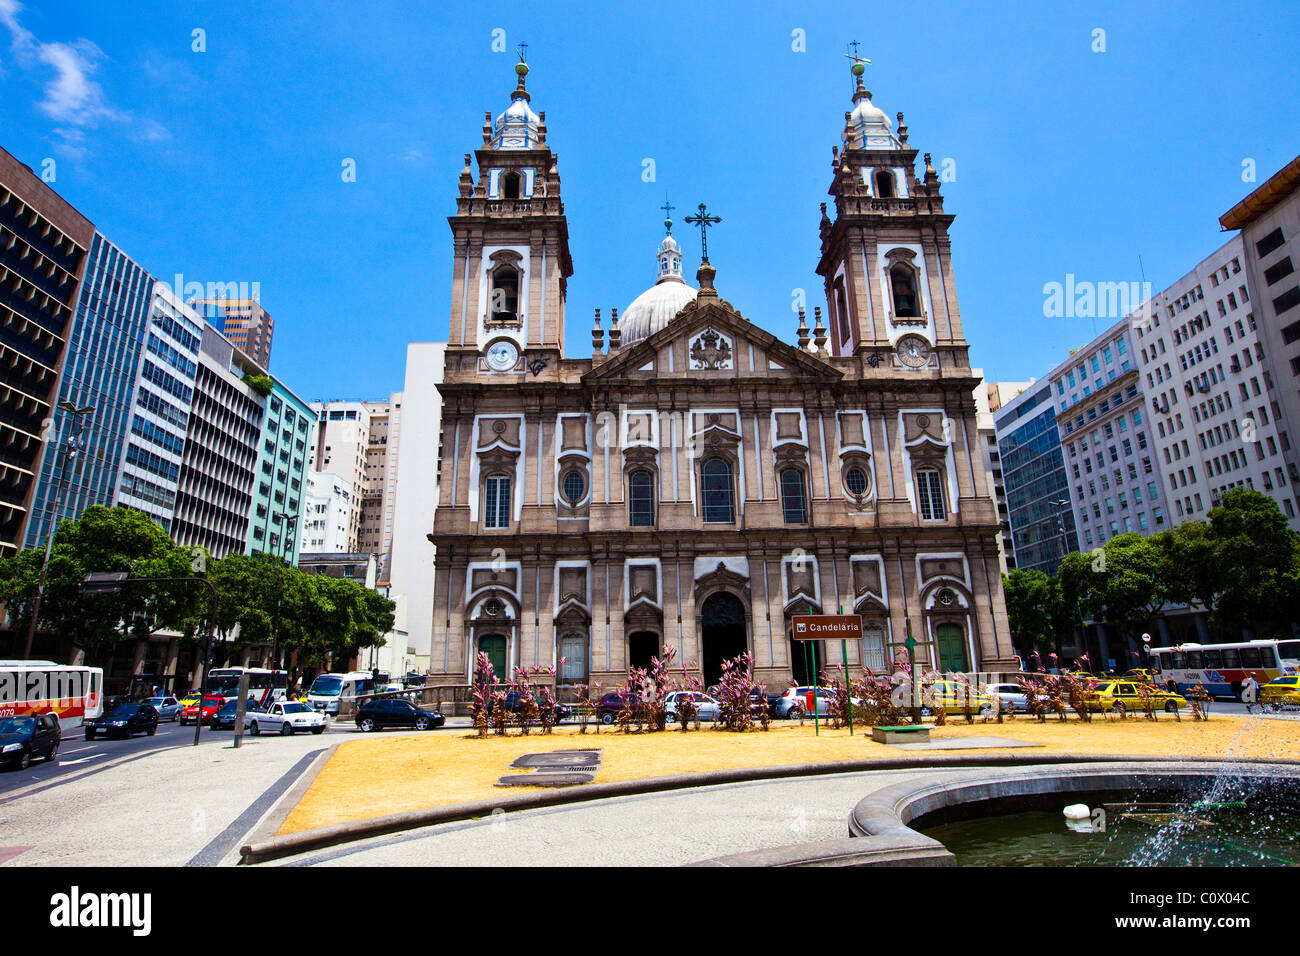 Candelaria ou l'église Igreja da Candelária, Rio de Janeiro, Brésil Banque D'Images